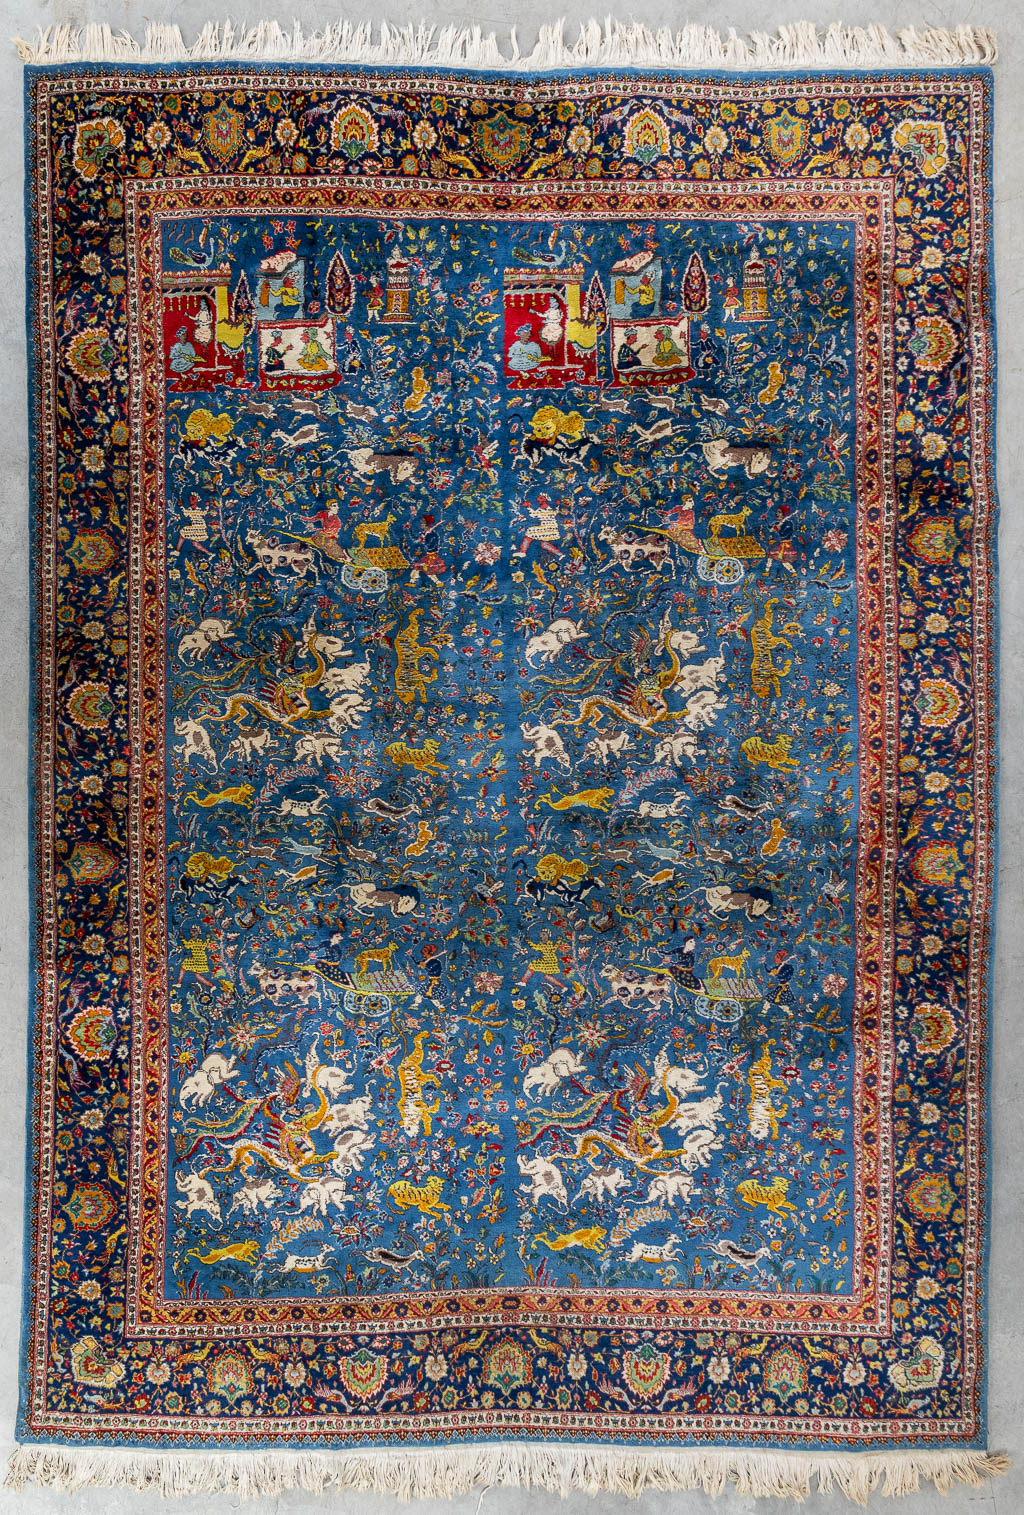 Lot 203 Een Oosters handgeknoopt tapijt met figuratief decor, Tabriz. (L:340 x W:243 cm)